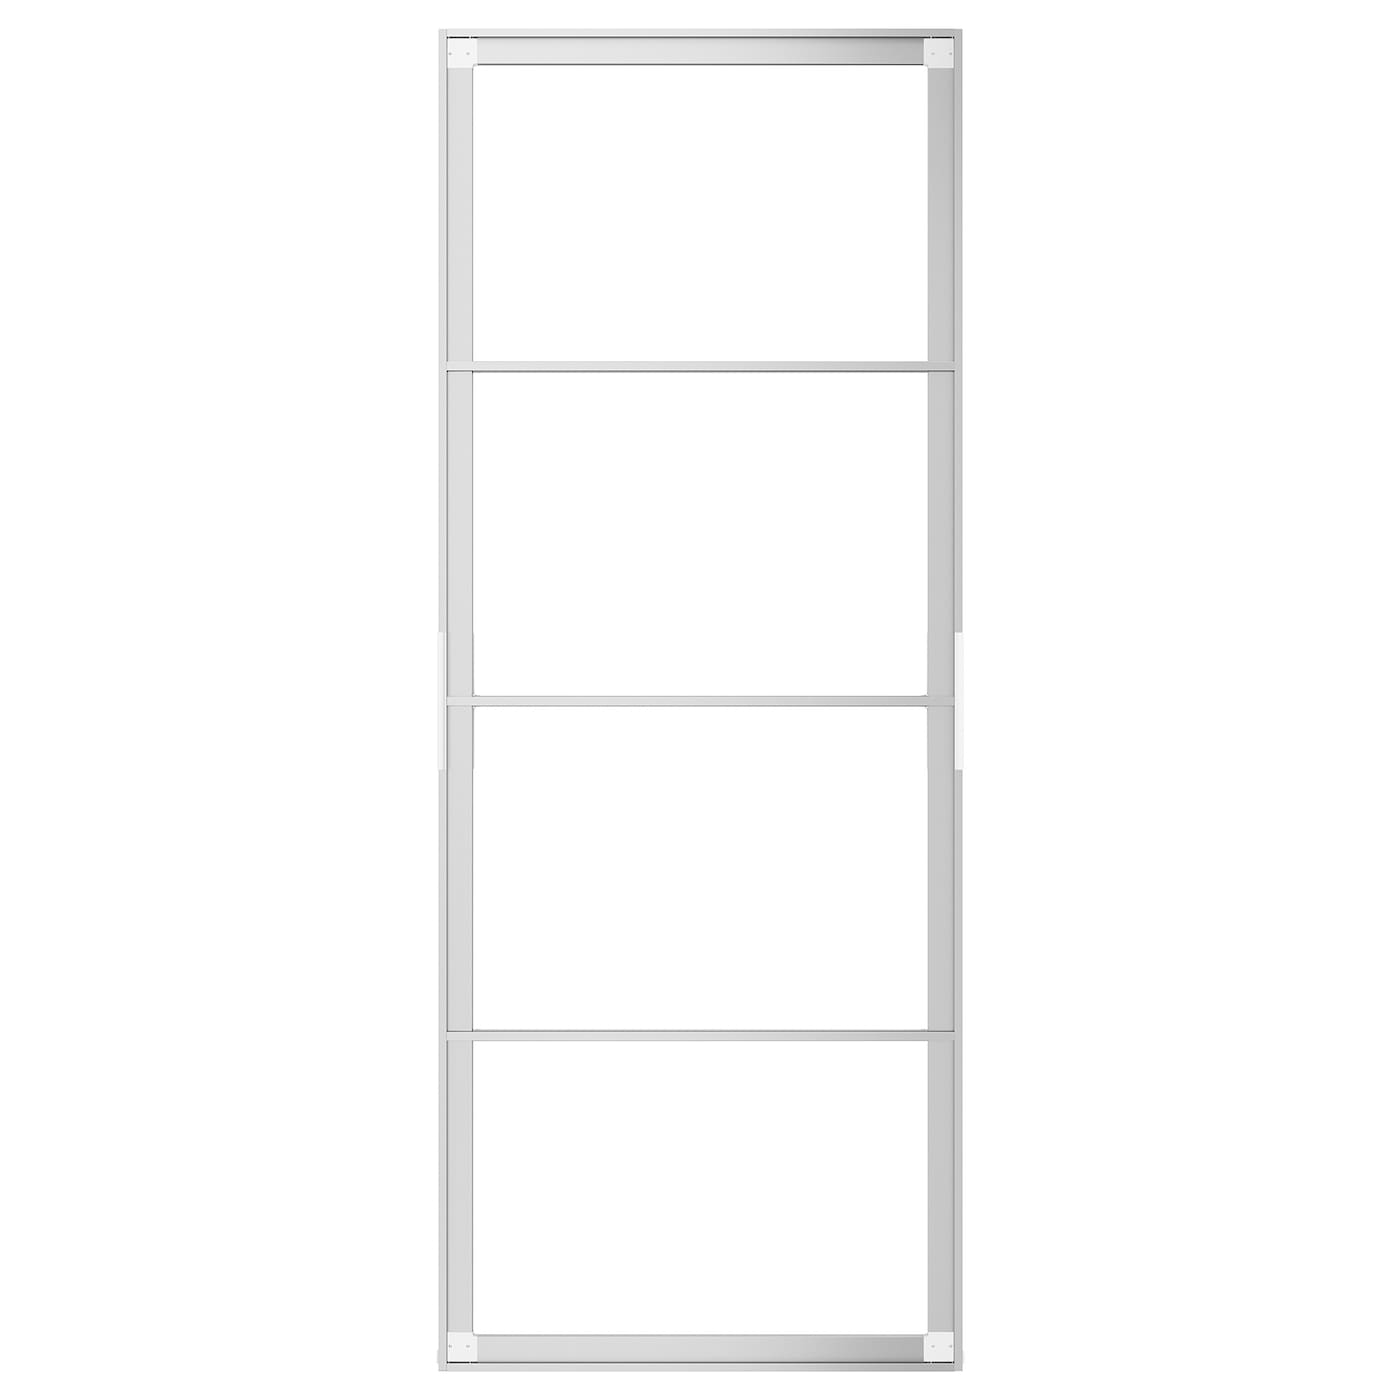 Пара рам раздвижных дверей - SKYTTA IKEA/ СКЮТТА ИКЕА, 77х196 см, серебрянный